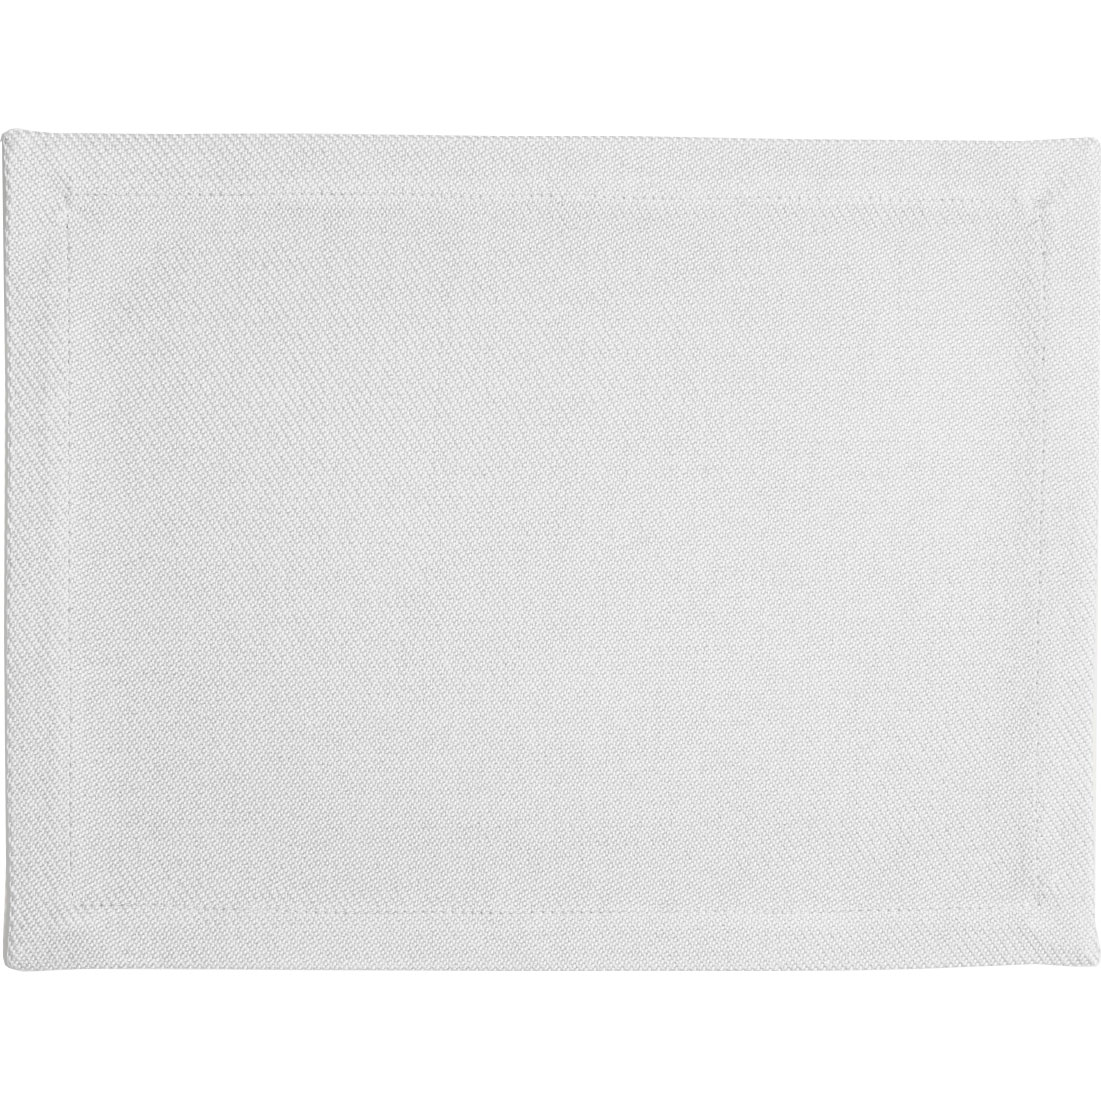 Plain Placemat 35x45 cm, White